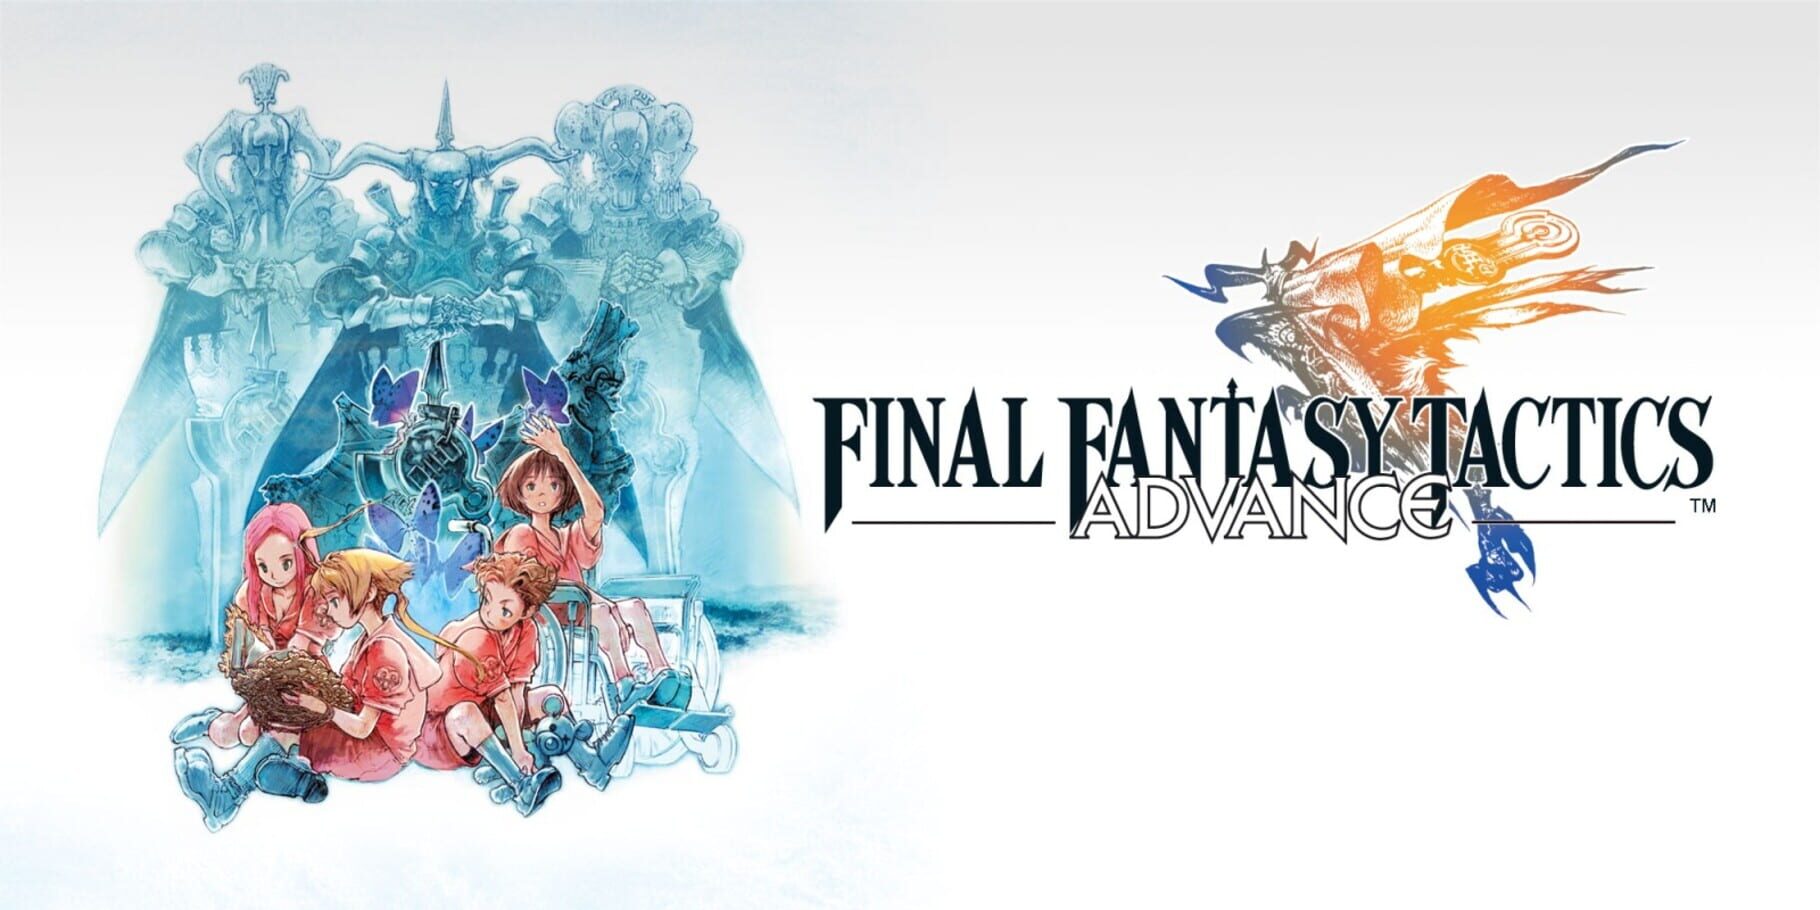 Arte - Final Fantasy Tactics Advance